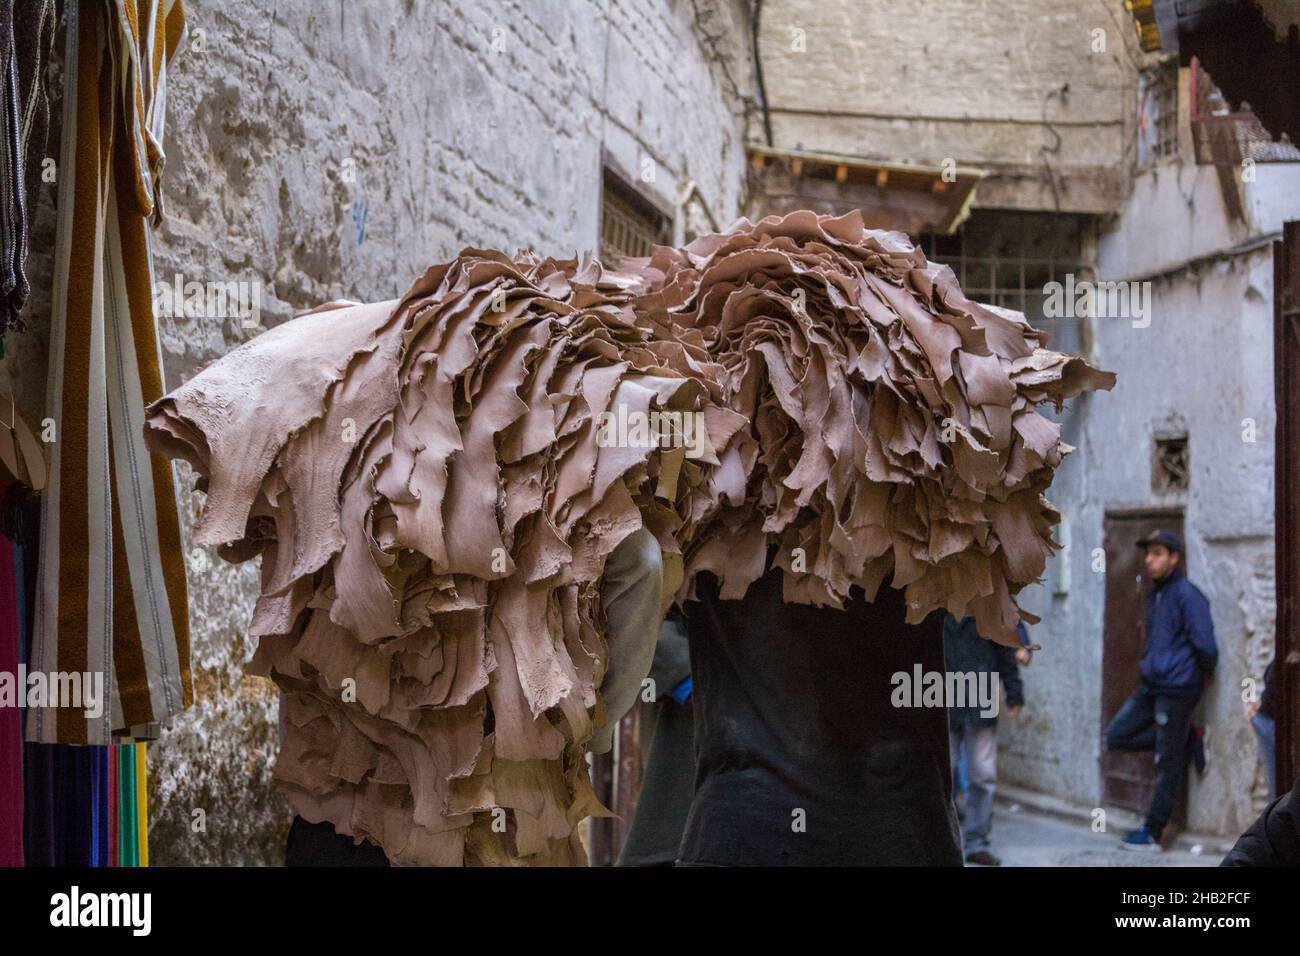 Fez, Marocco - Febbraio 23. 2019: Gente locale che trasporta la pelle grezza sul retro attraverso la stretta corsia in medina (centro storico) al mercato vicino a. Foto Stock